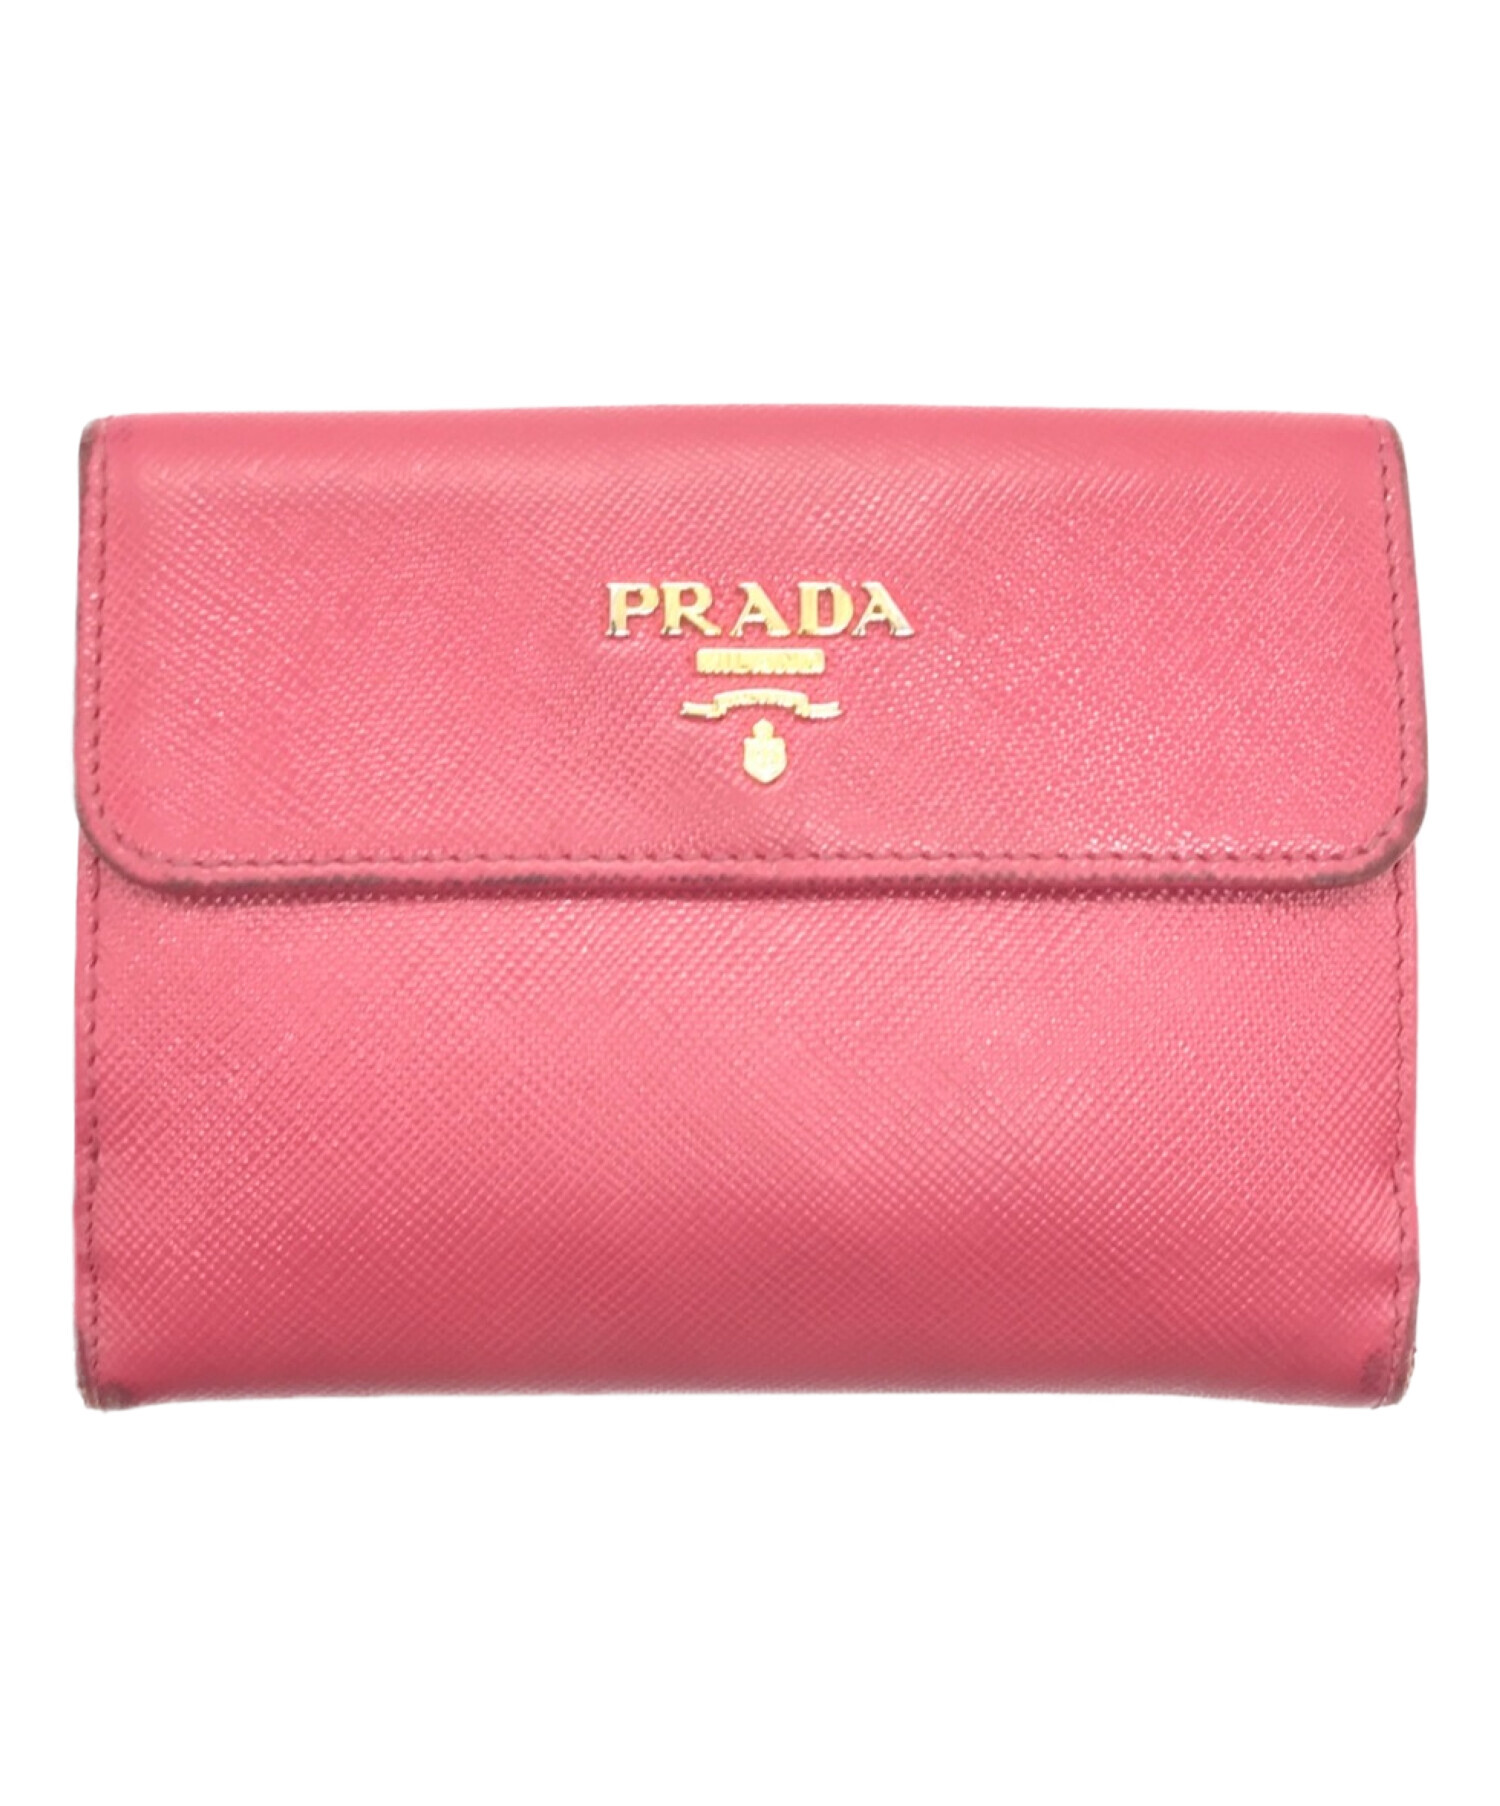 PRADA プラダ 財布 ピンクピンク系 - 折り財布